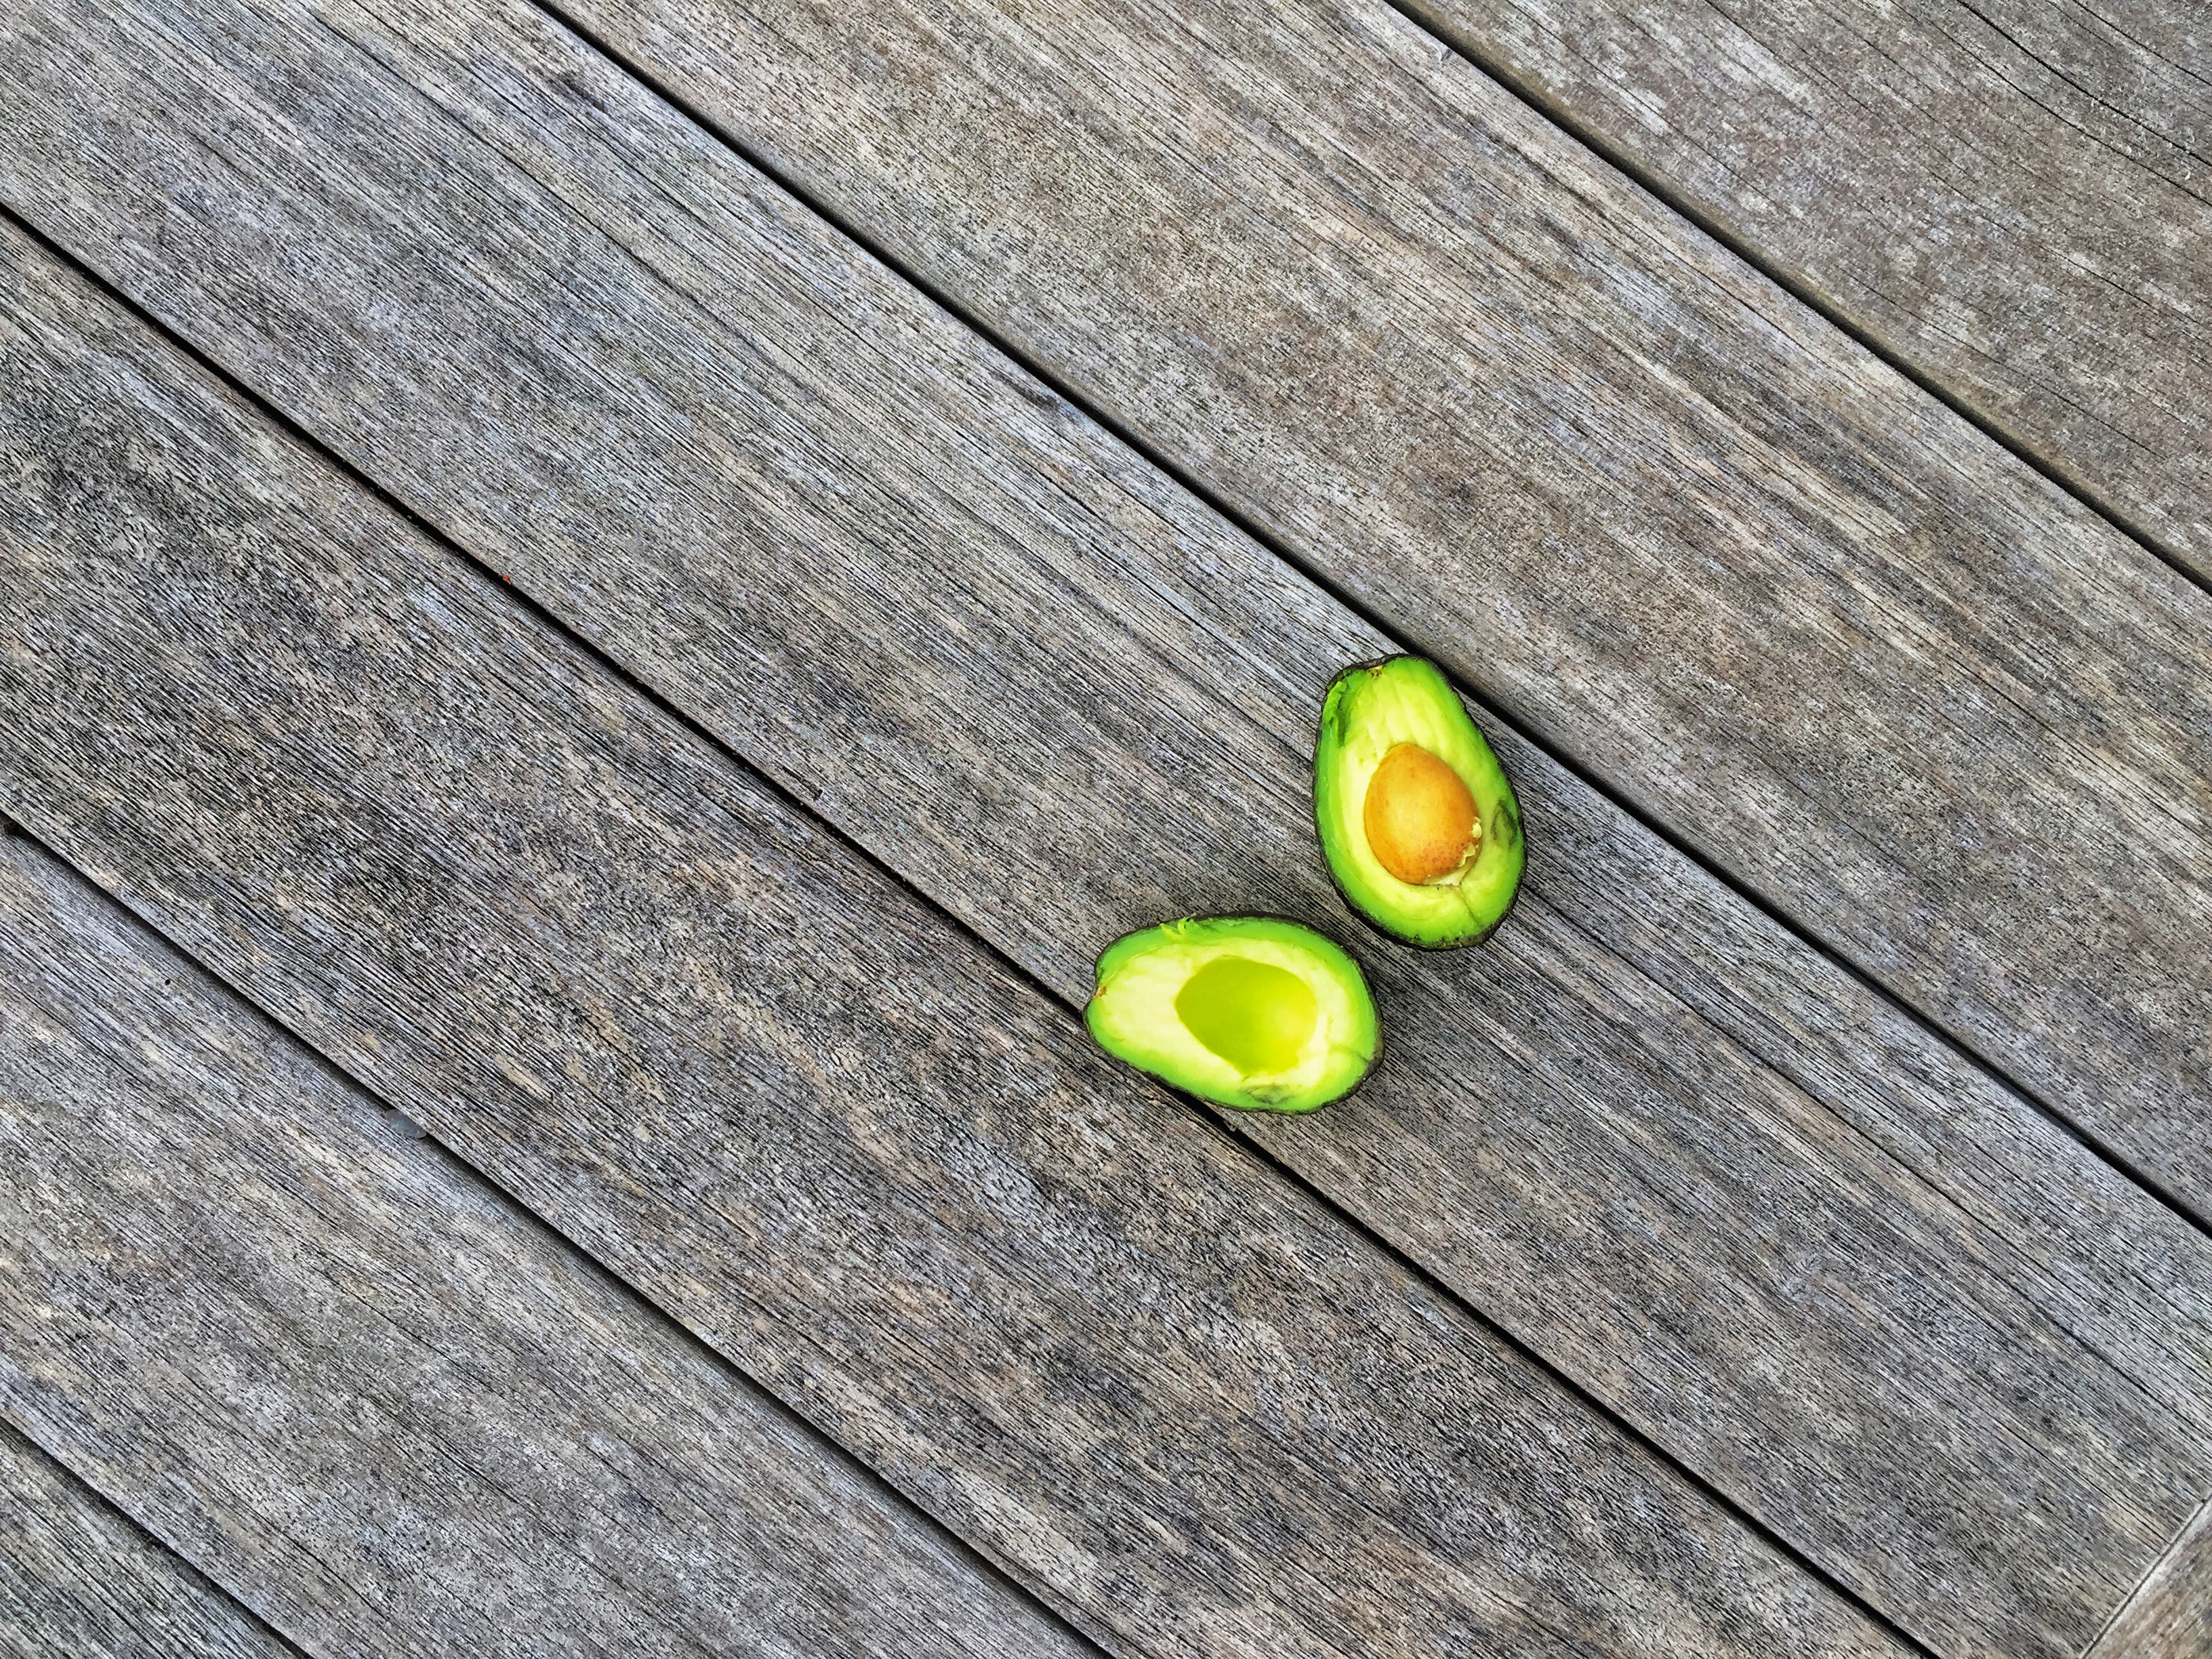 De avocado is gezond om deze redenen...